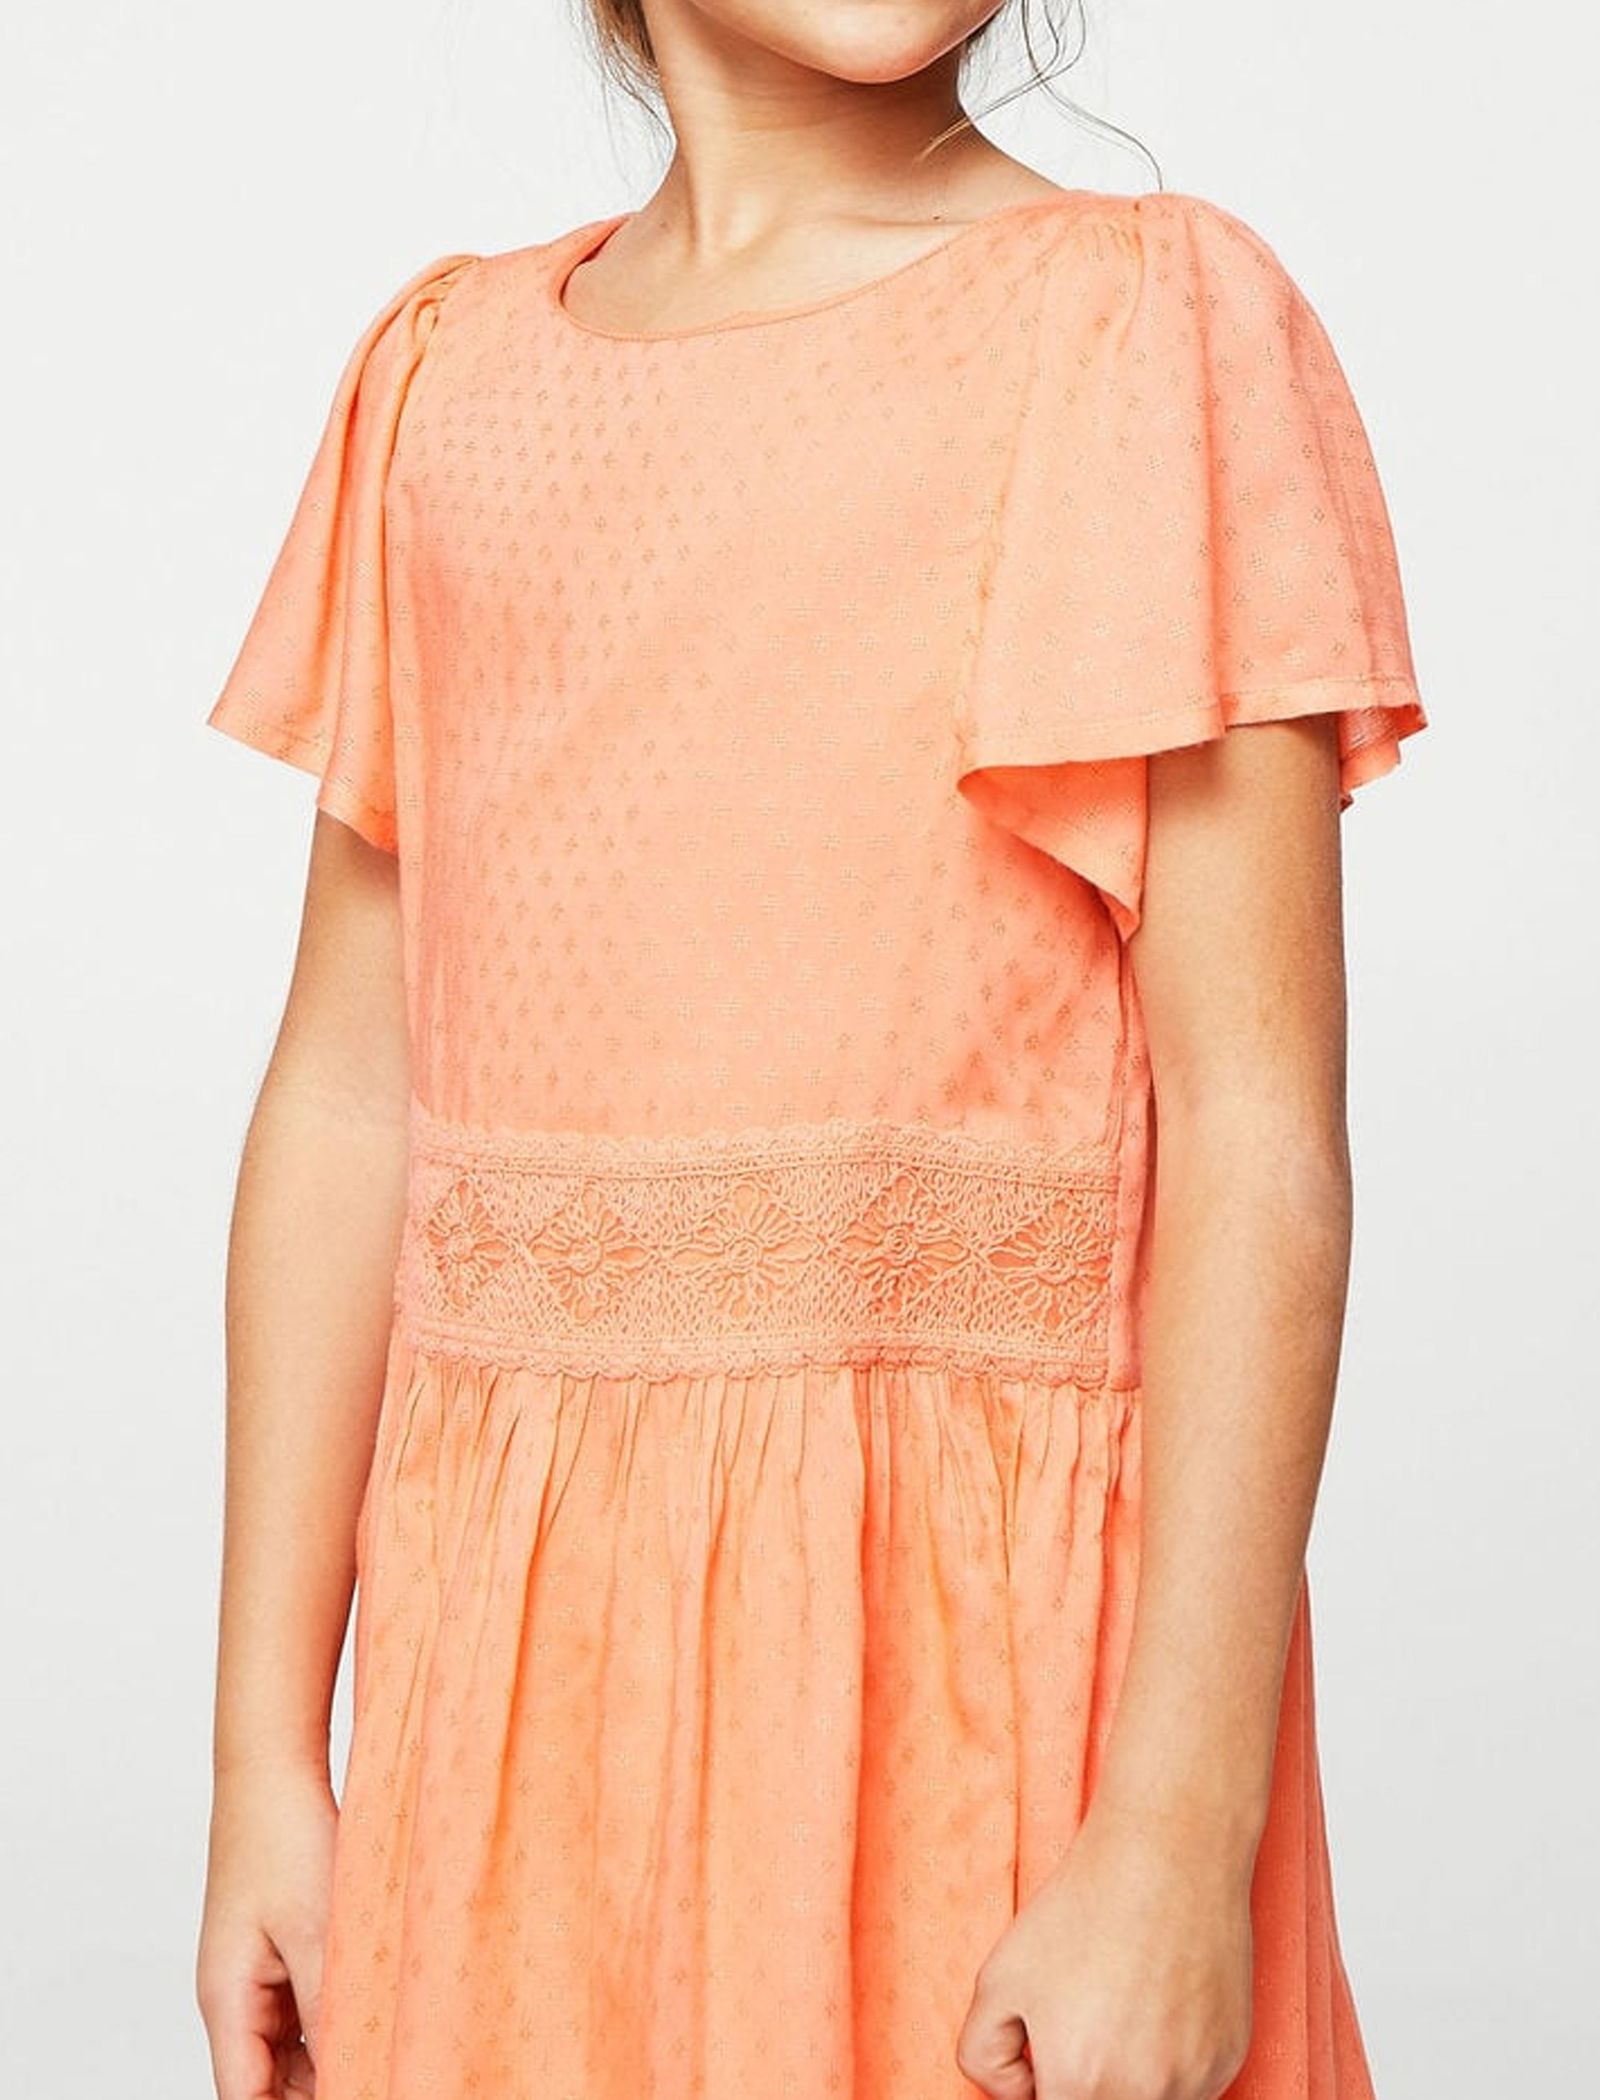 پیراهن ویسکوز روزمره دخترانه - مانگو - نارنجي - 3